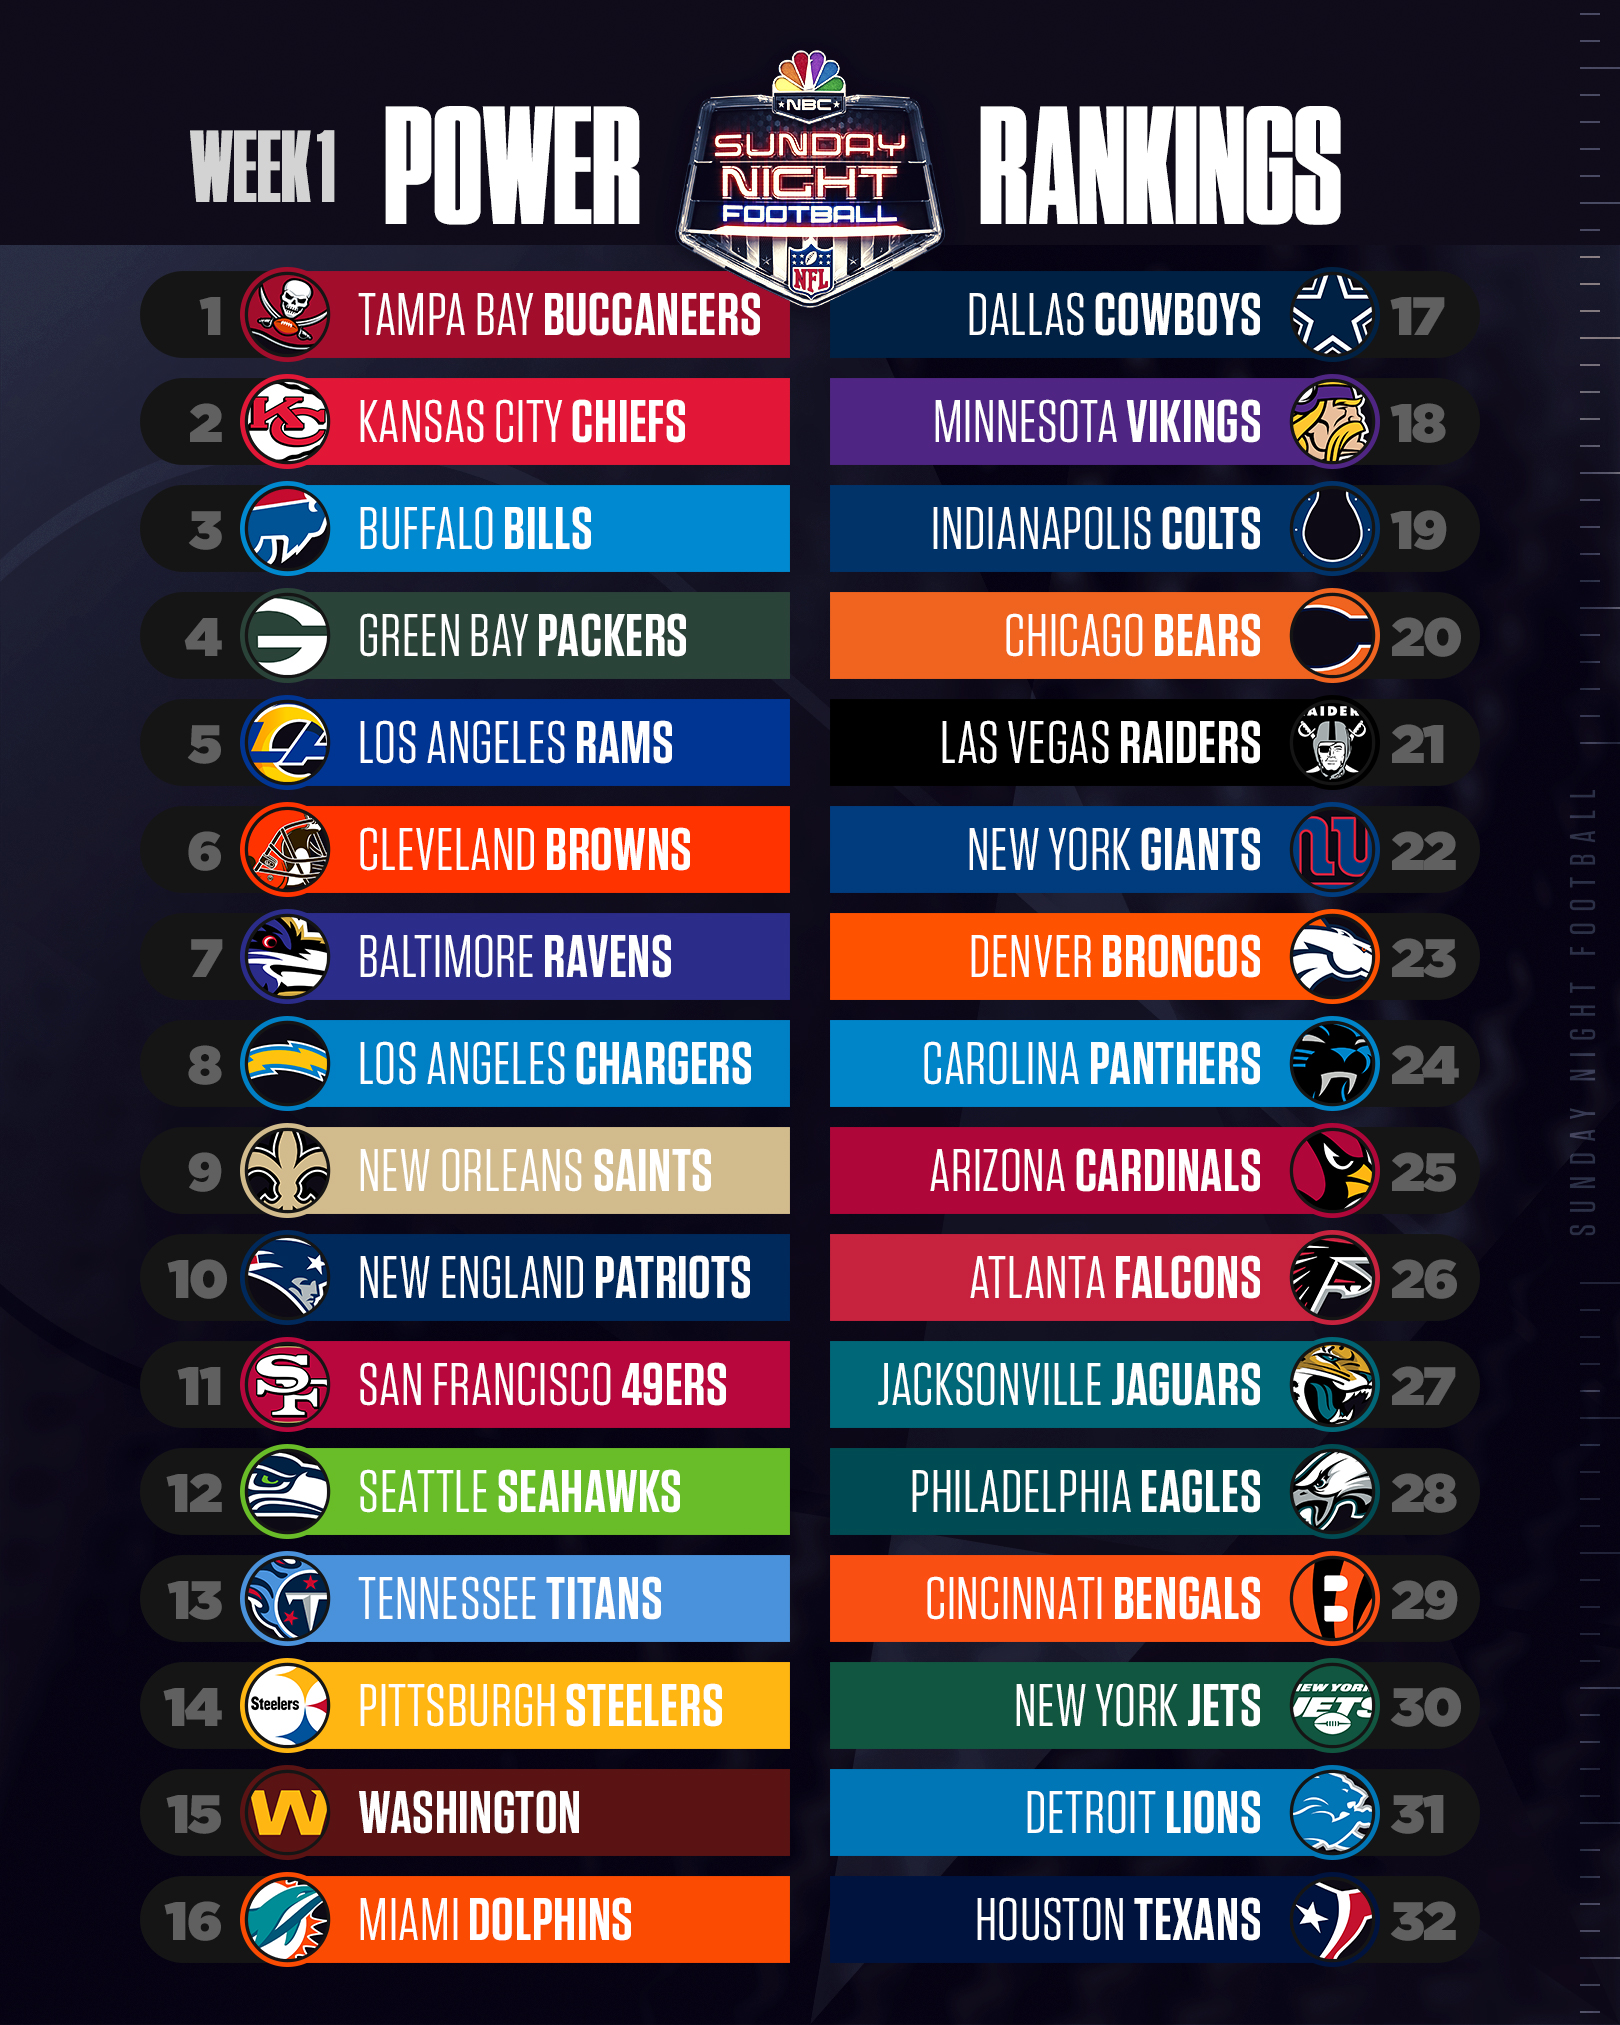 NFL Power Rankings Week 1